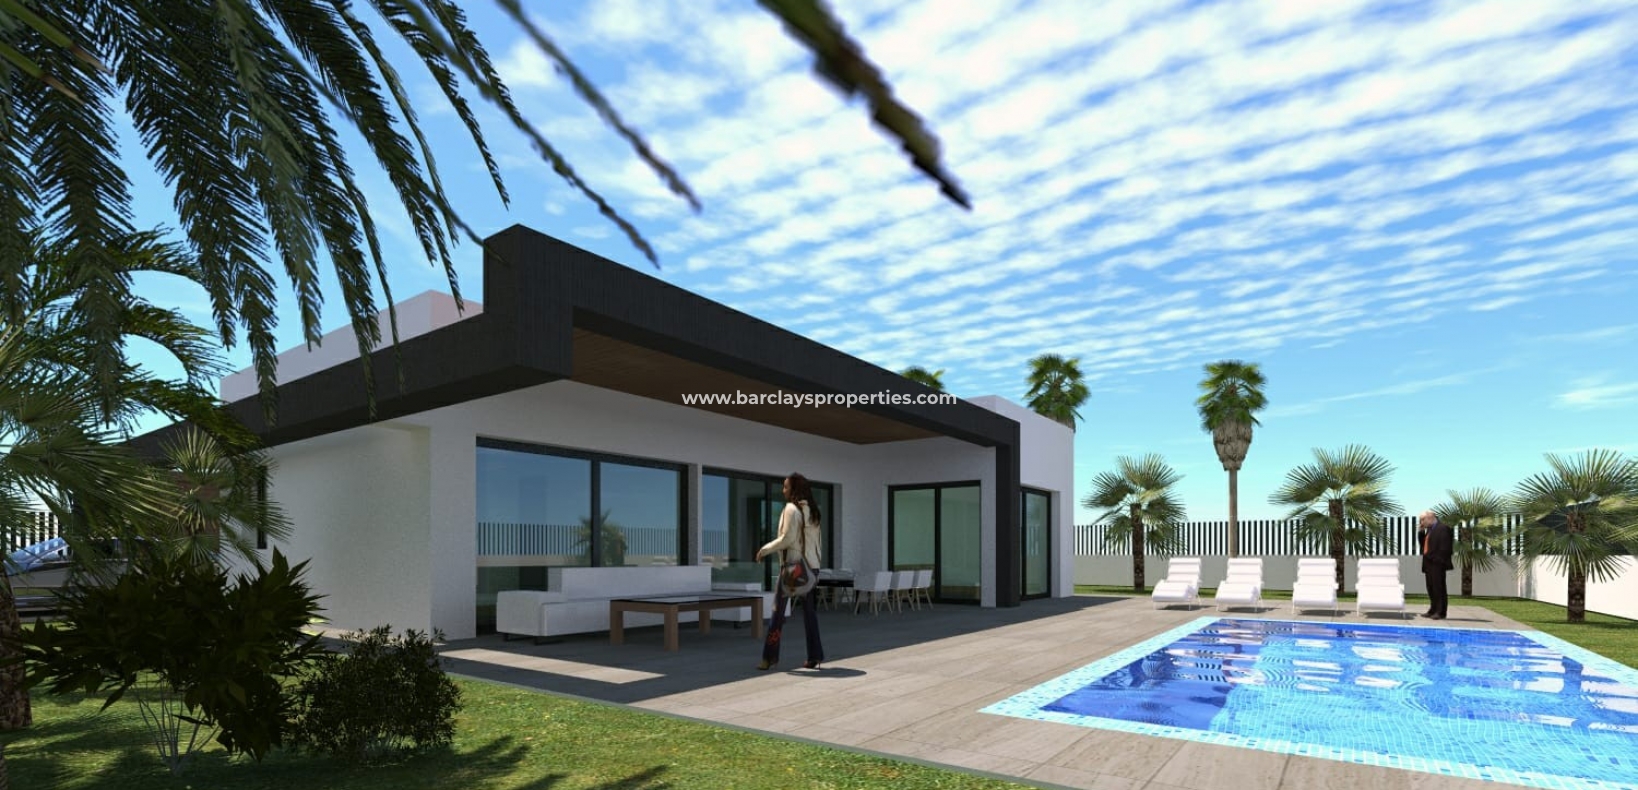 House View 6 - Groot huis op het westen gelegen perceel te koop in La Marina